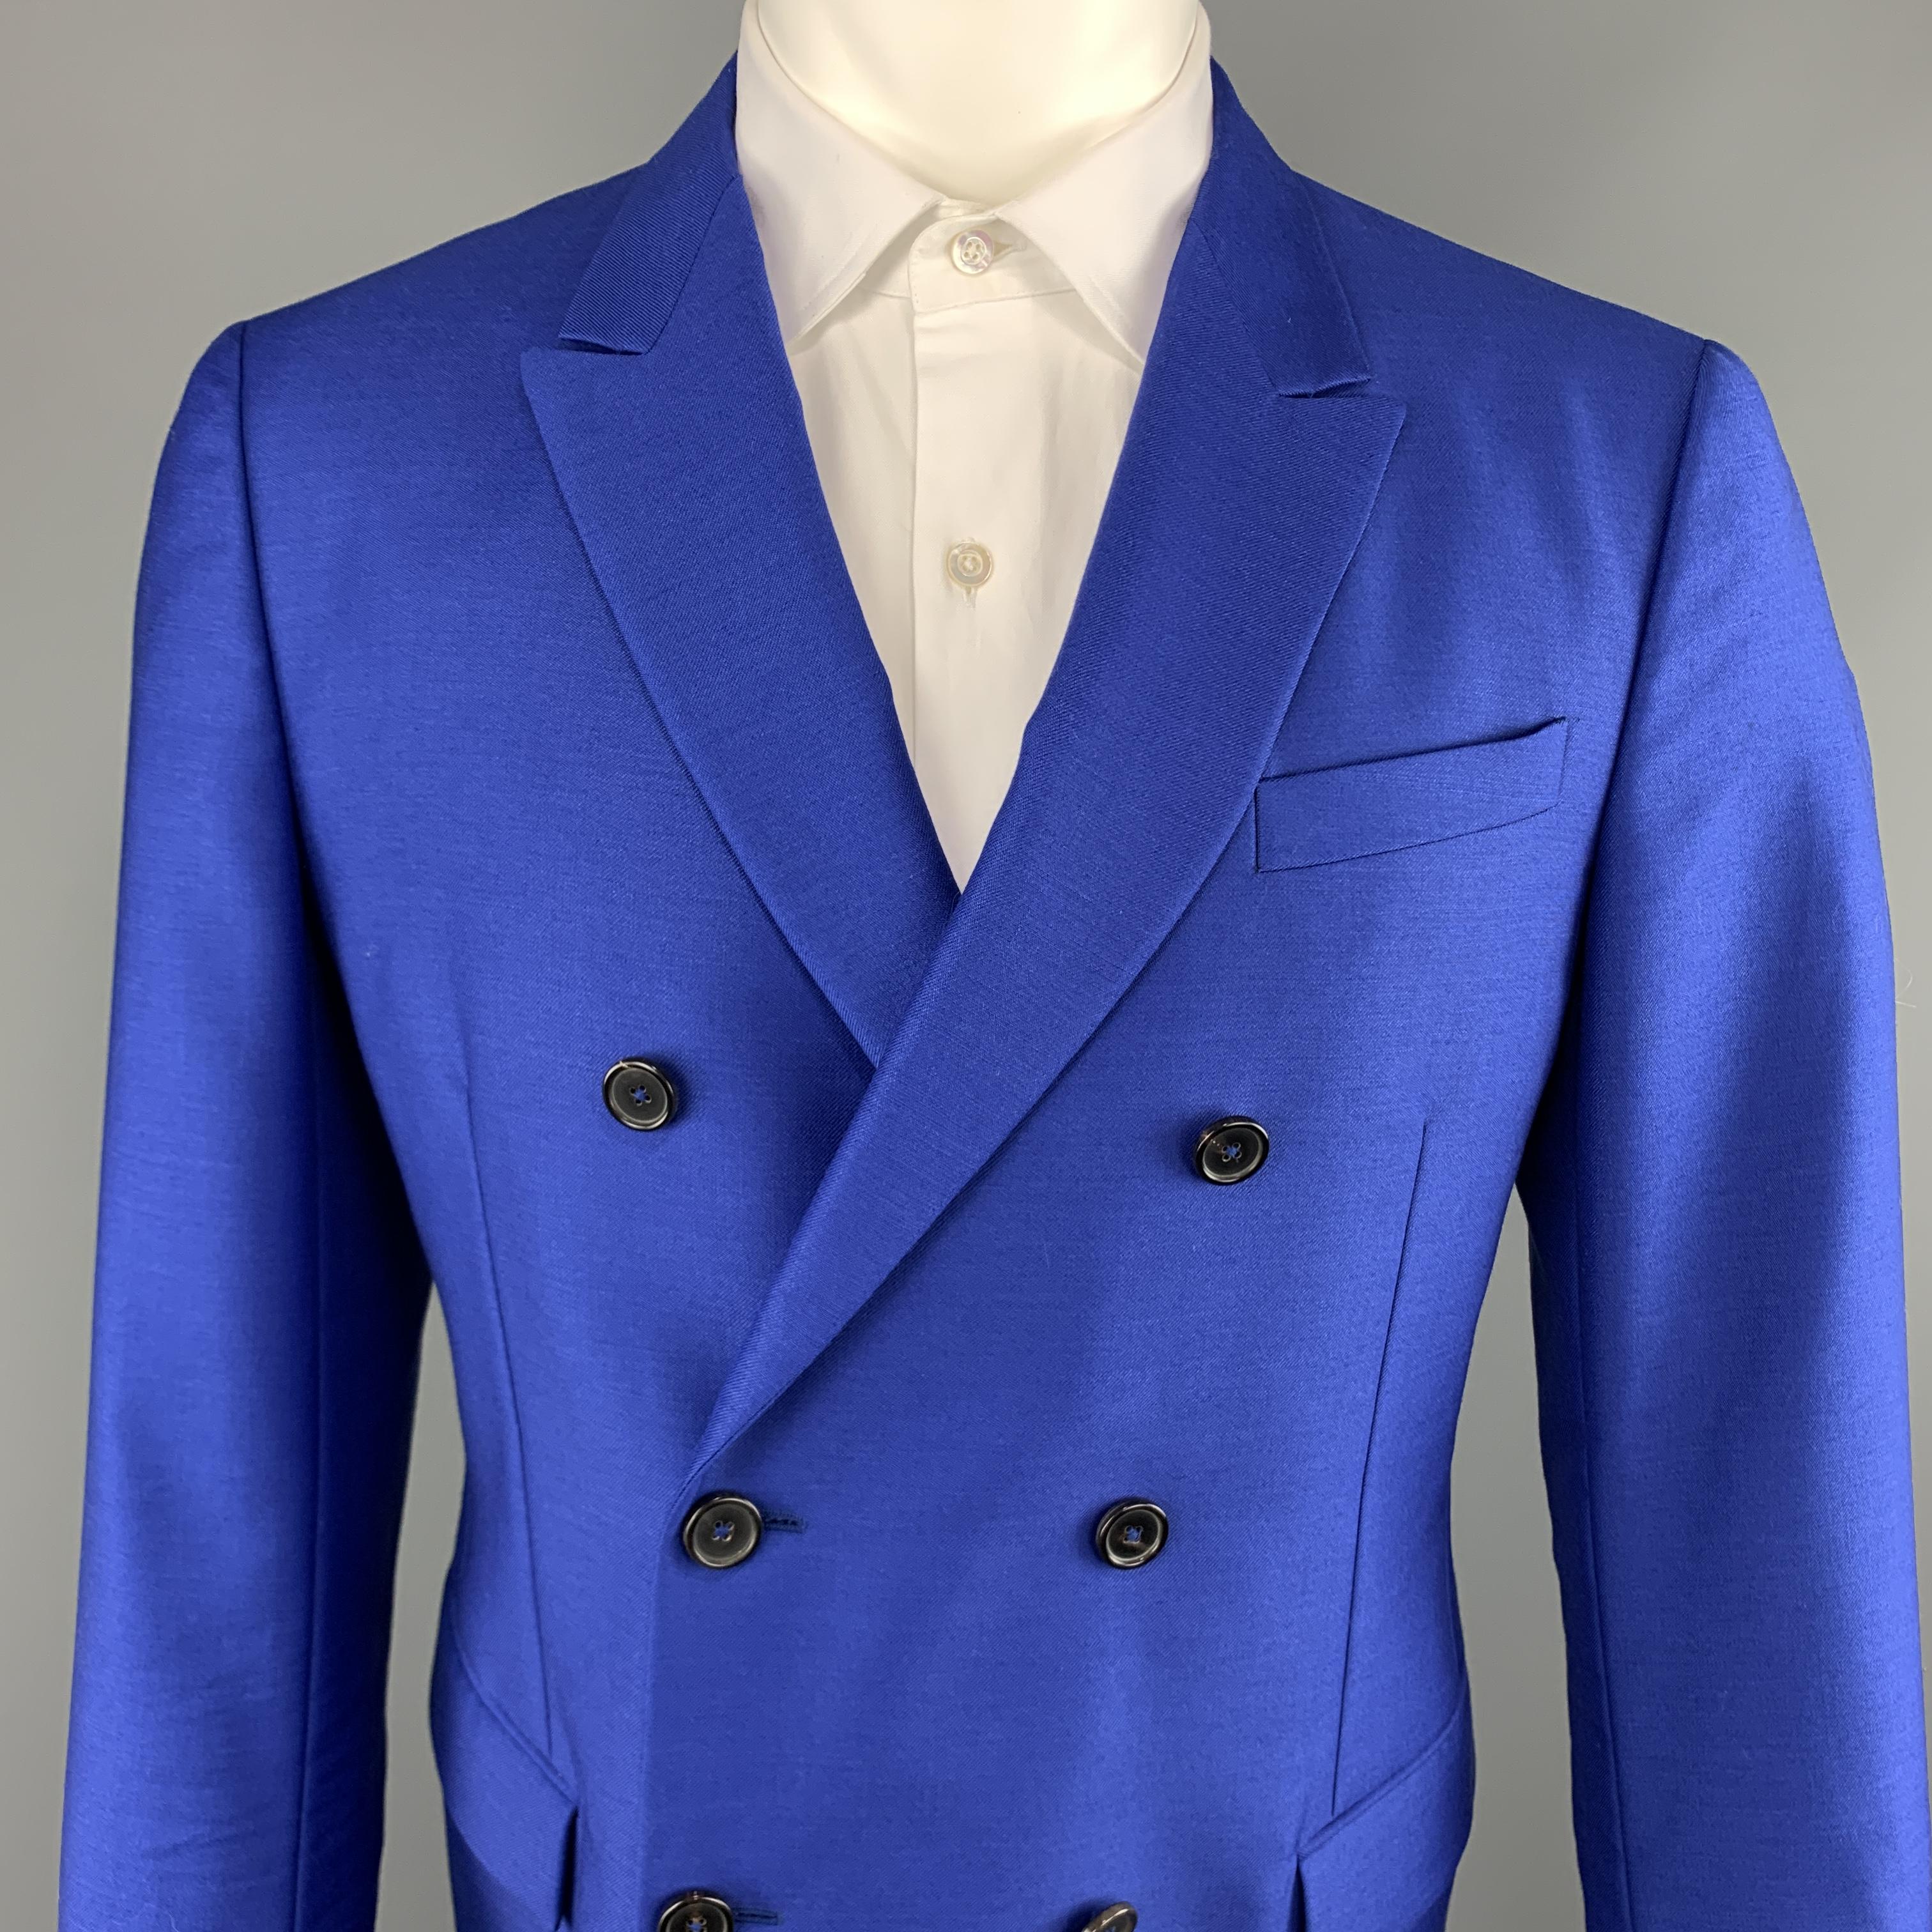 bright blue notch lapel suit